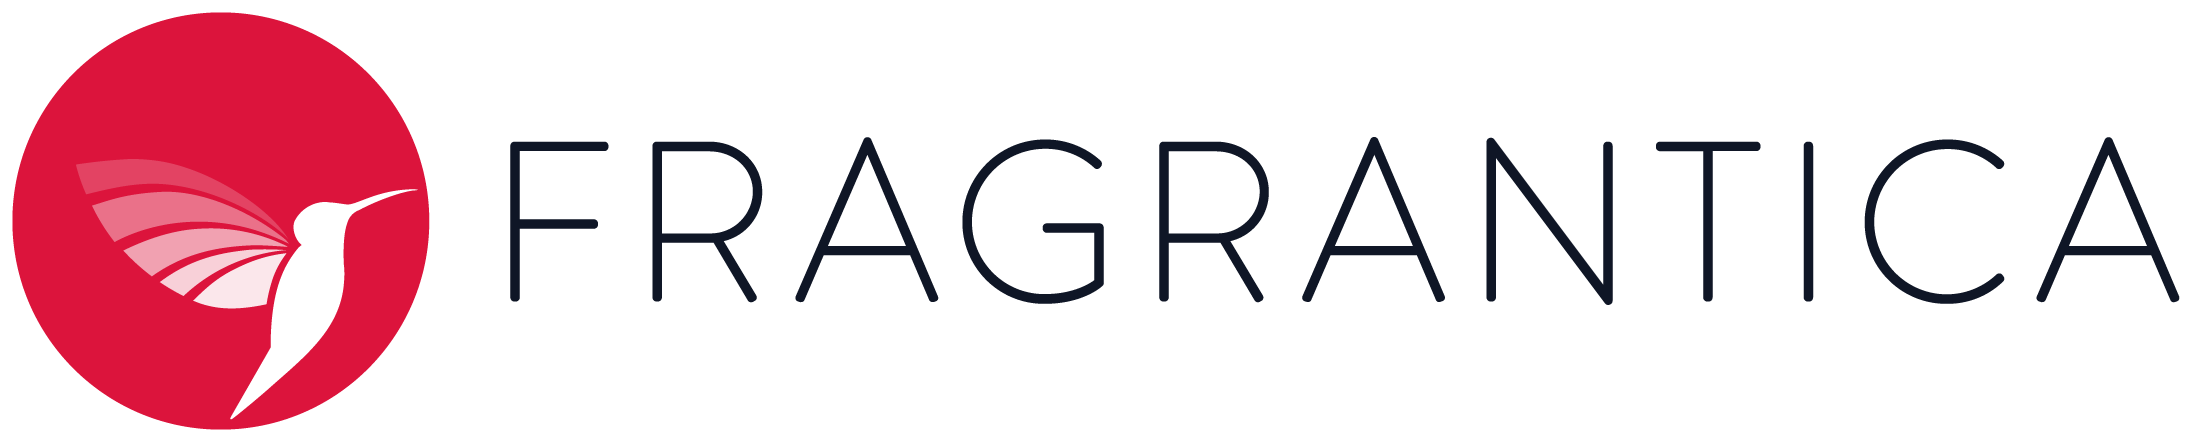 fragrantica-logo-svg.png